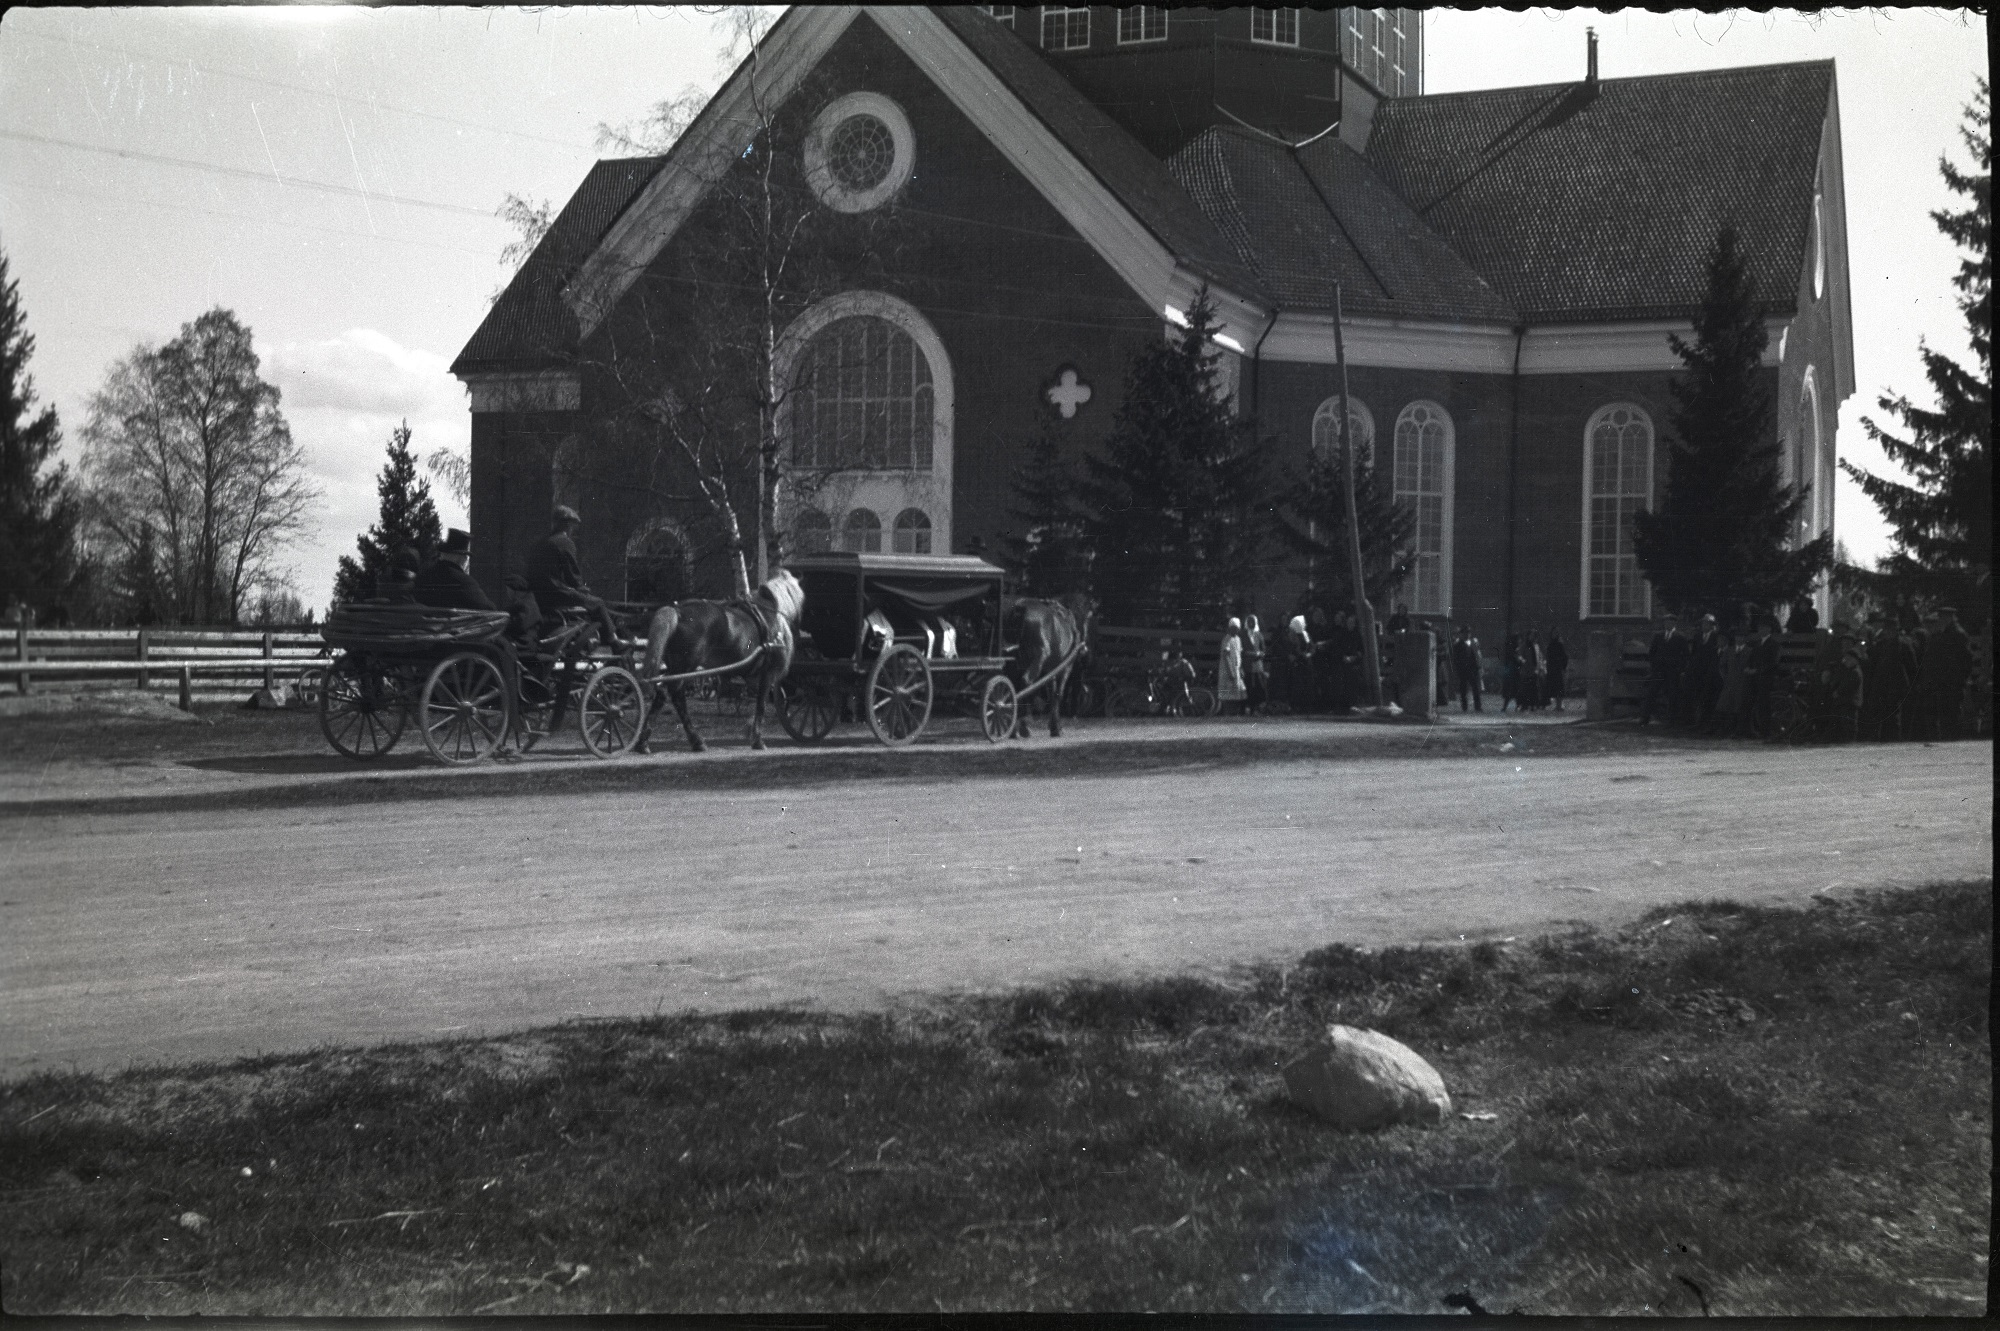 Prosten Lauréns begravning 1928. Likvagnen är en typisk sådan medan trillan som kör bakom är av en ovanligare sort. Längst till vänster syns bommarna där hästarna stod under gudstjänsterna.